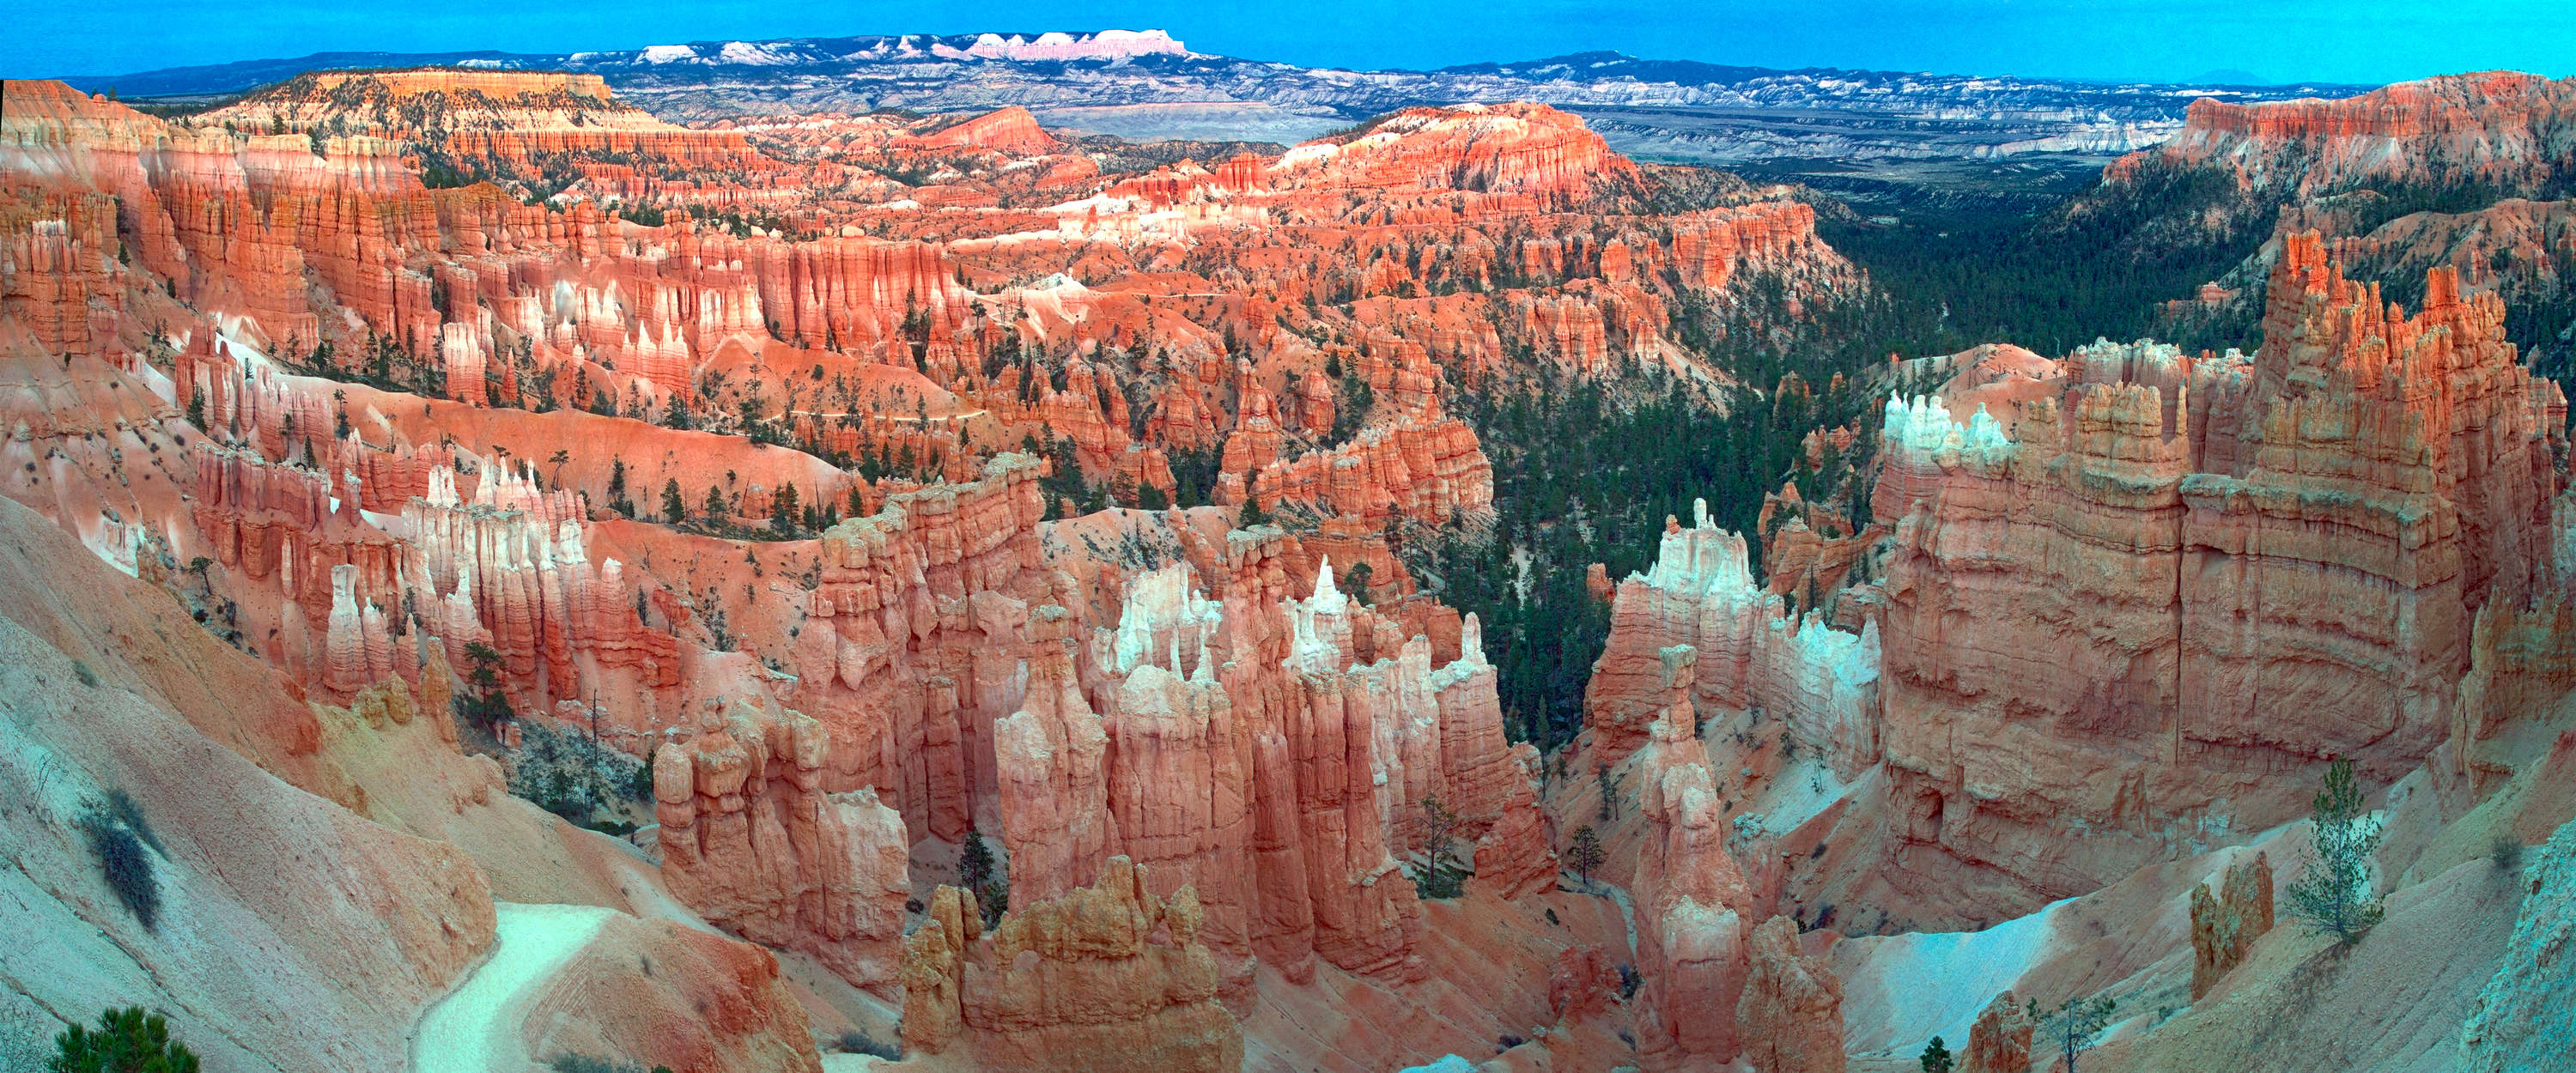             Fotomural Cañón Panorama roca roja y blanca
        